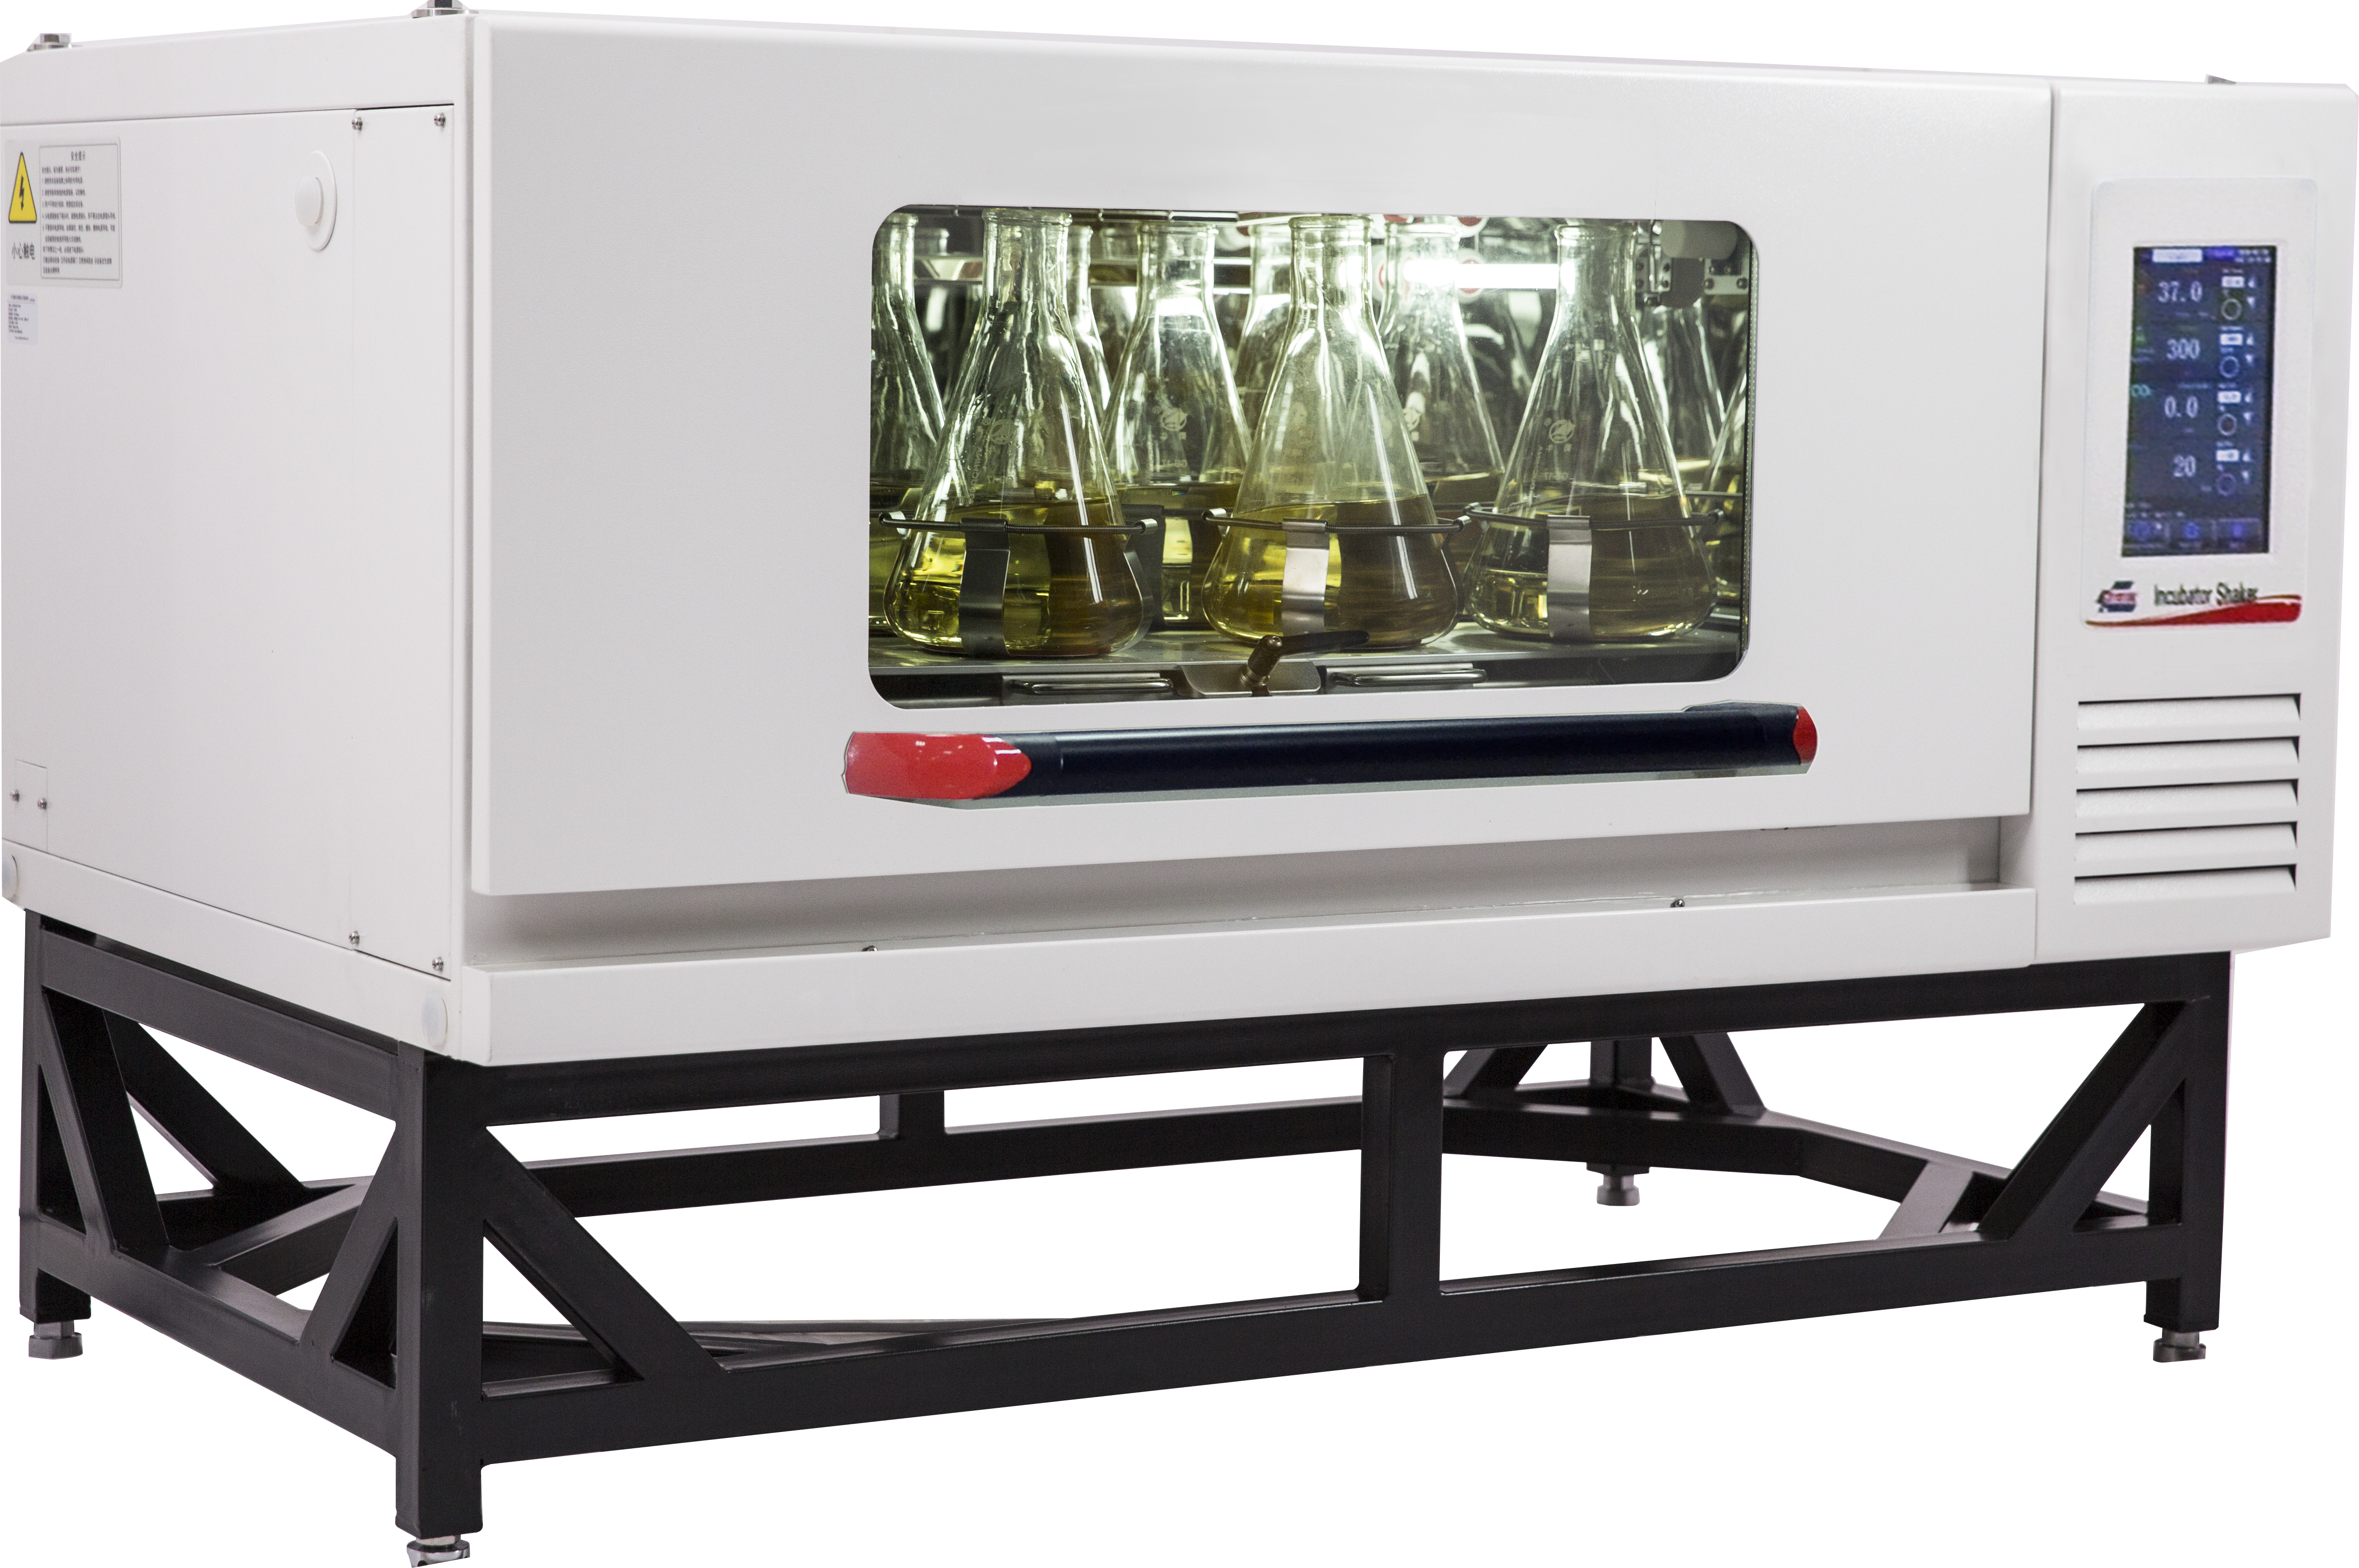 Produktfoto: Schüttelinkubator IS-6 mit Kühlung und Touchscreen, großes Tablar 900 x 560 mm